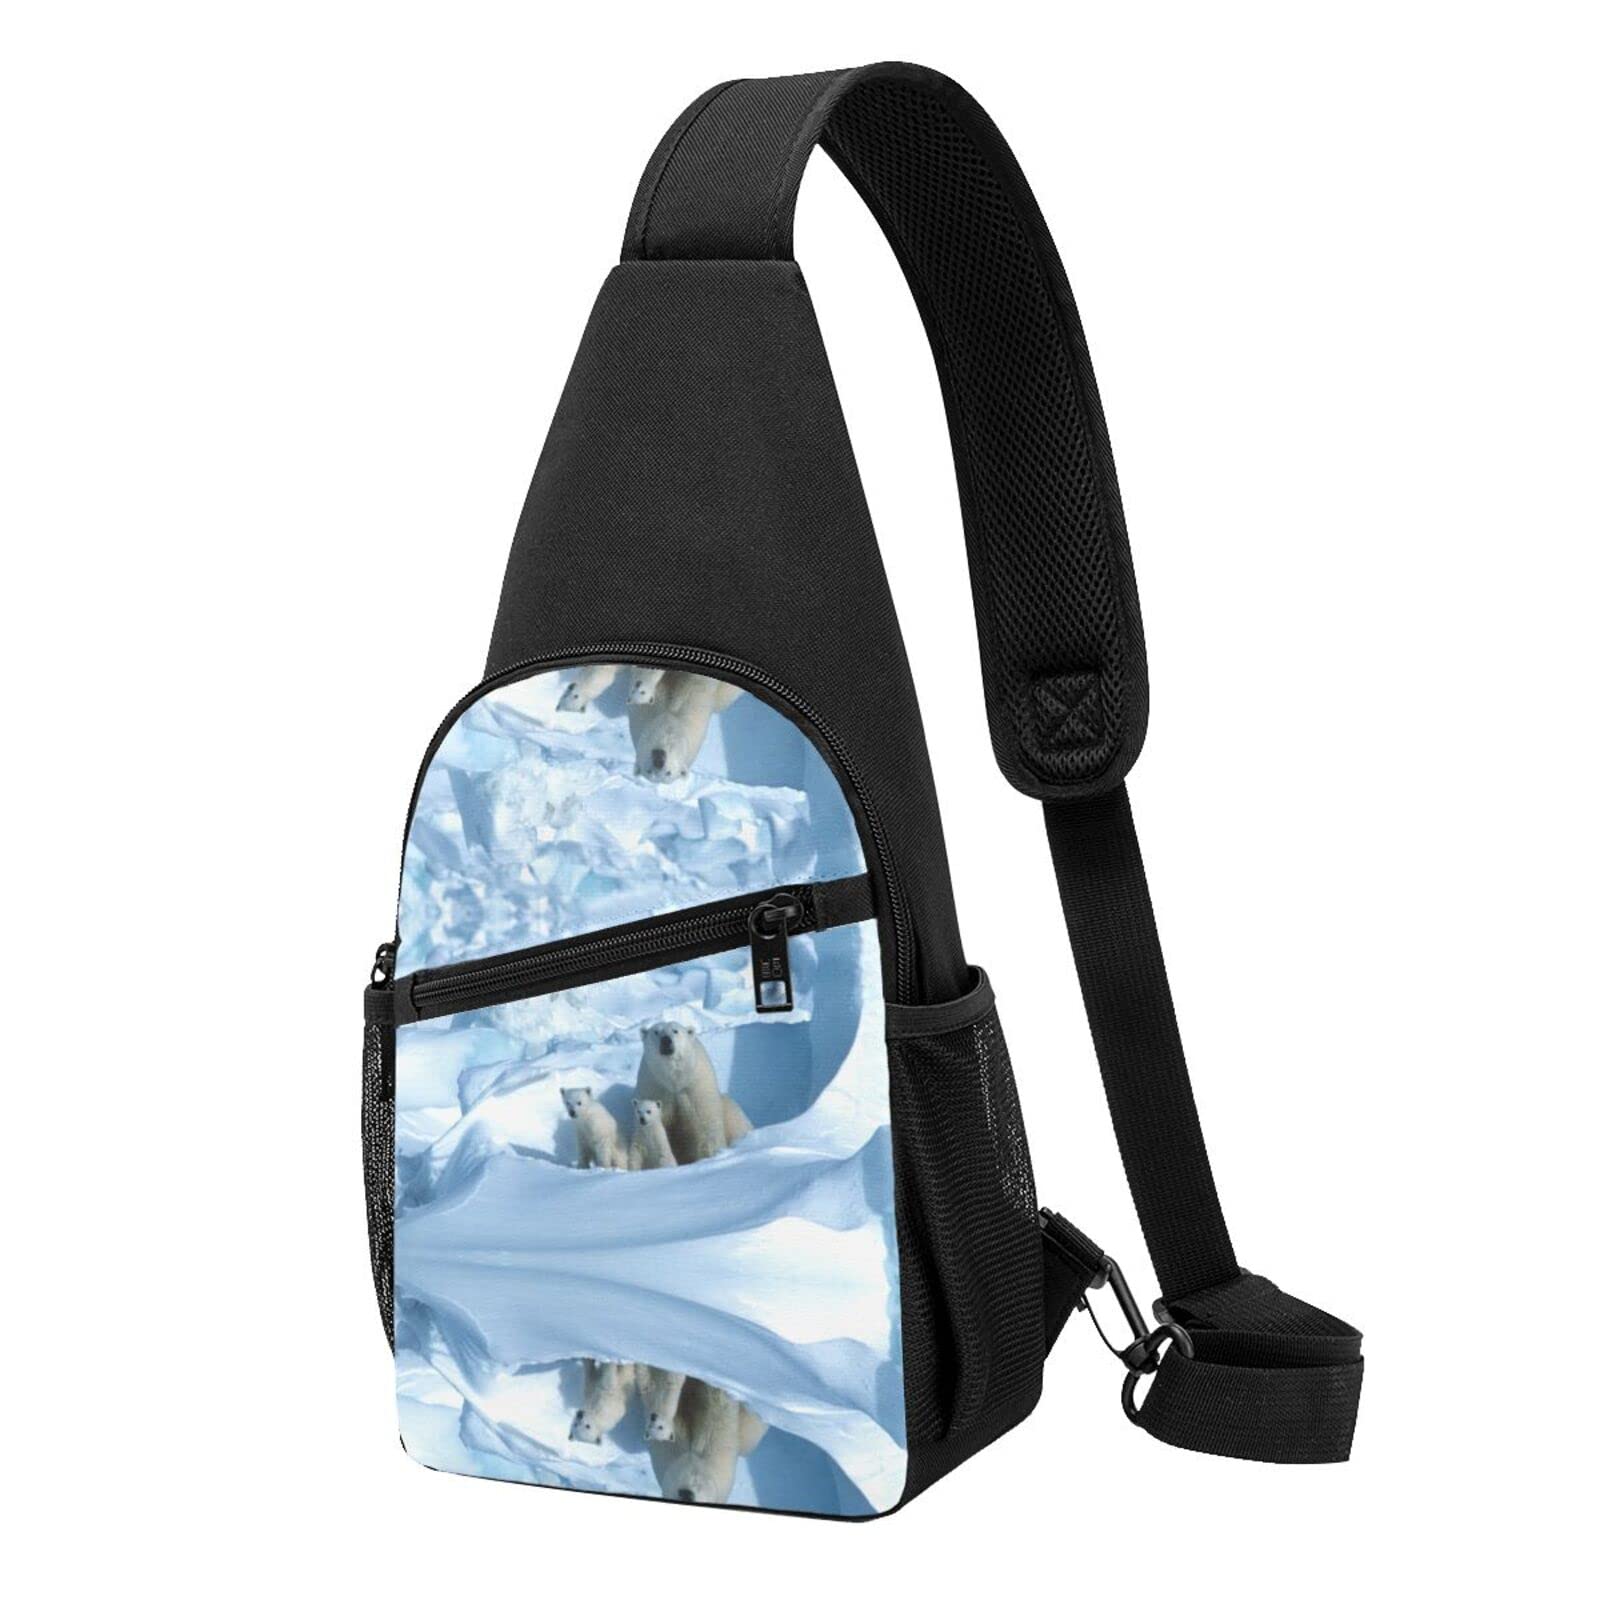 Brusttasche mit Wildpilz-Druck, wasserdicht, leicht, ein Gurt, Schultertasche, für Outdoor, Wandern, Sport, eisbär, Einheitsgröße